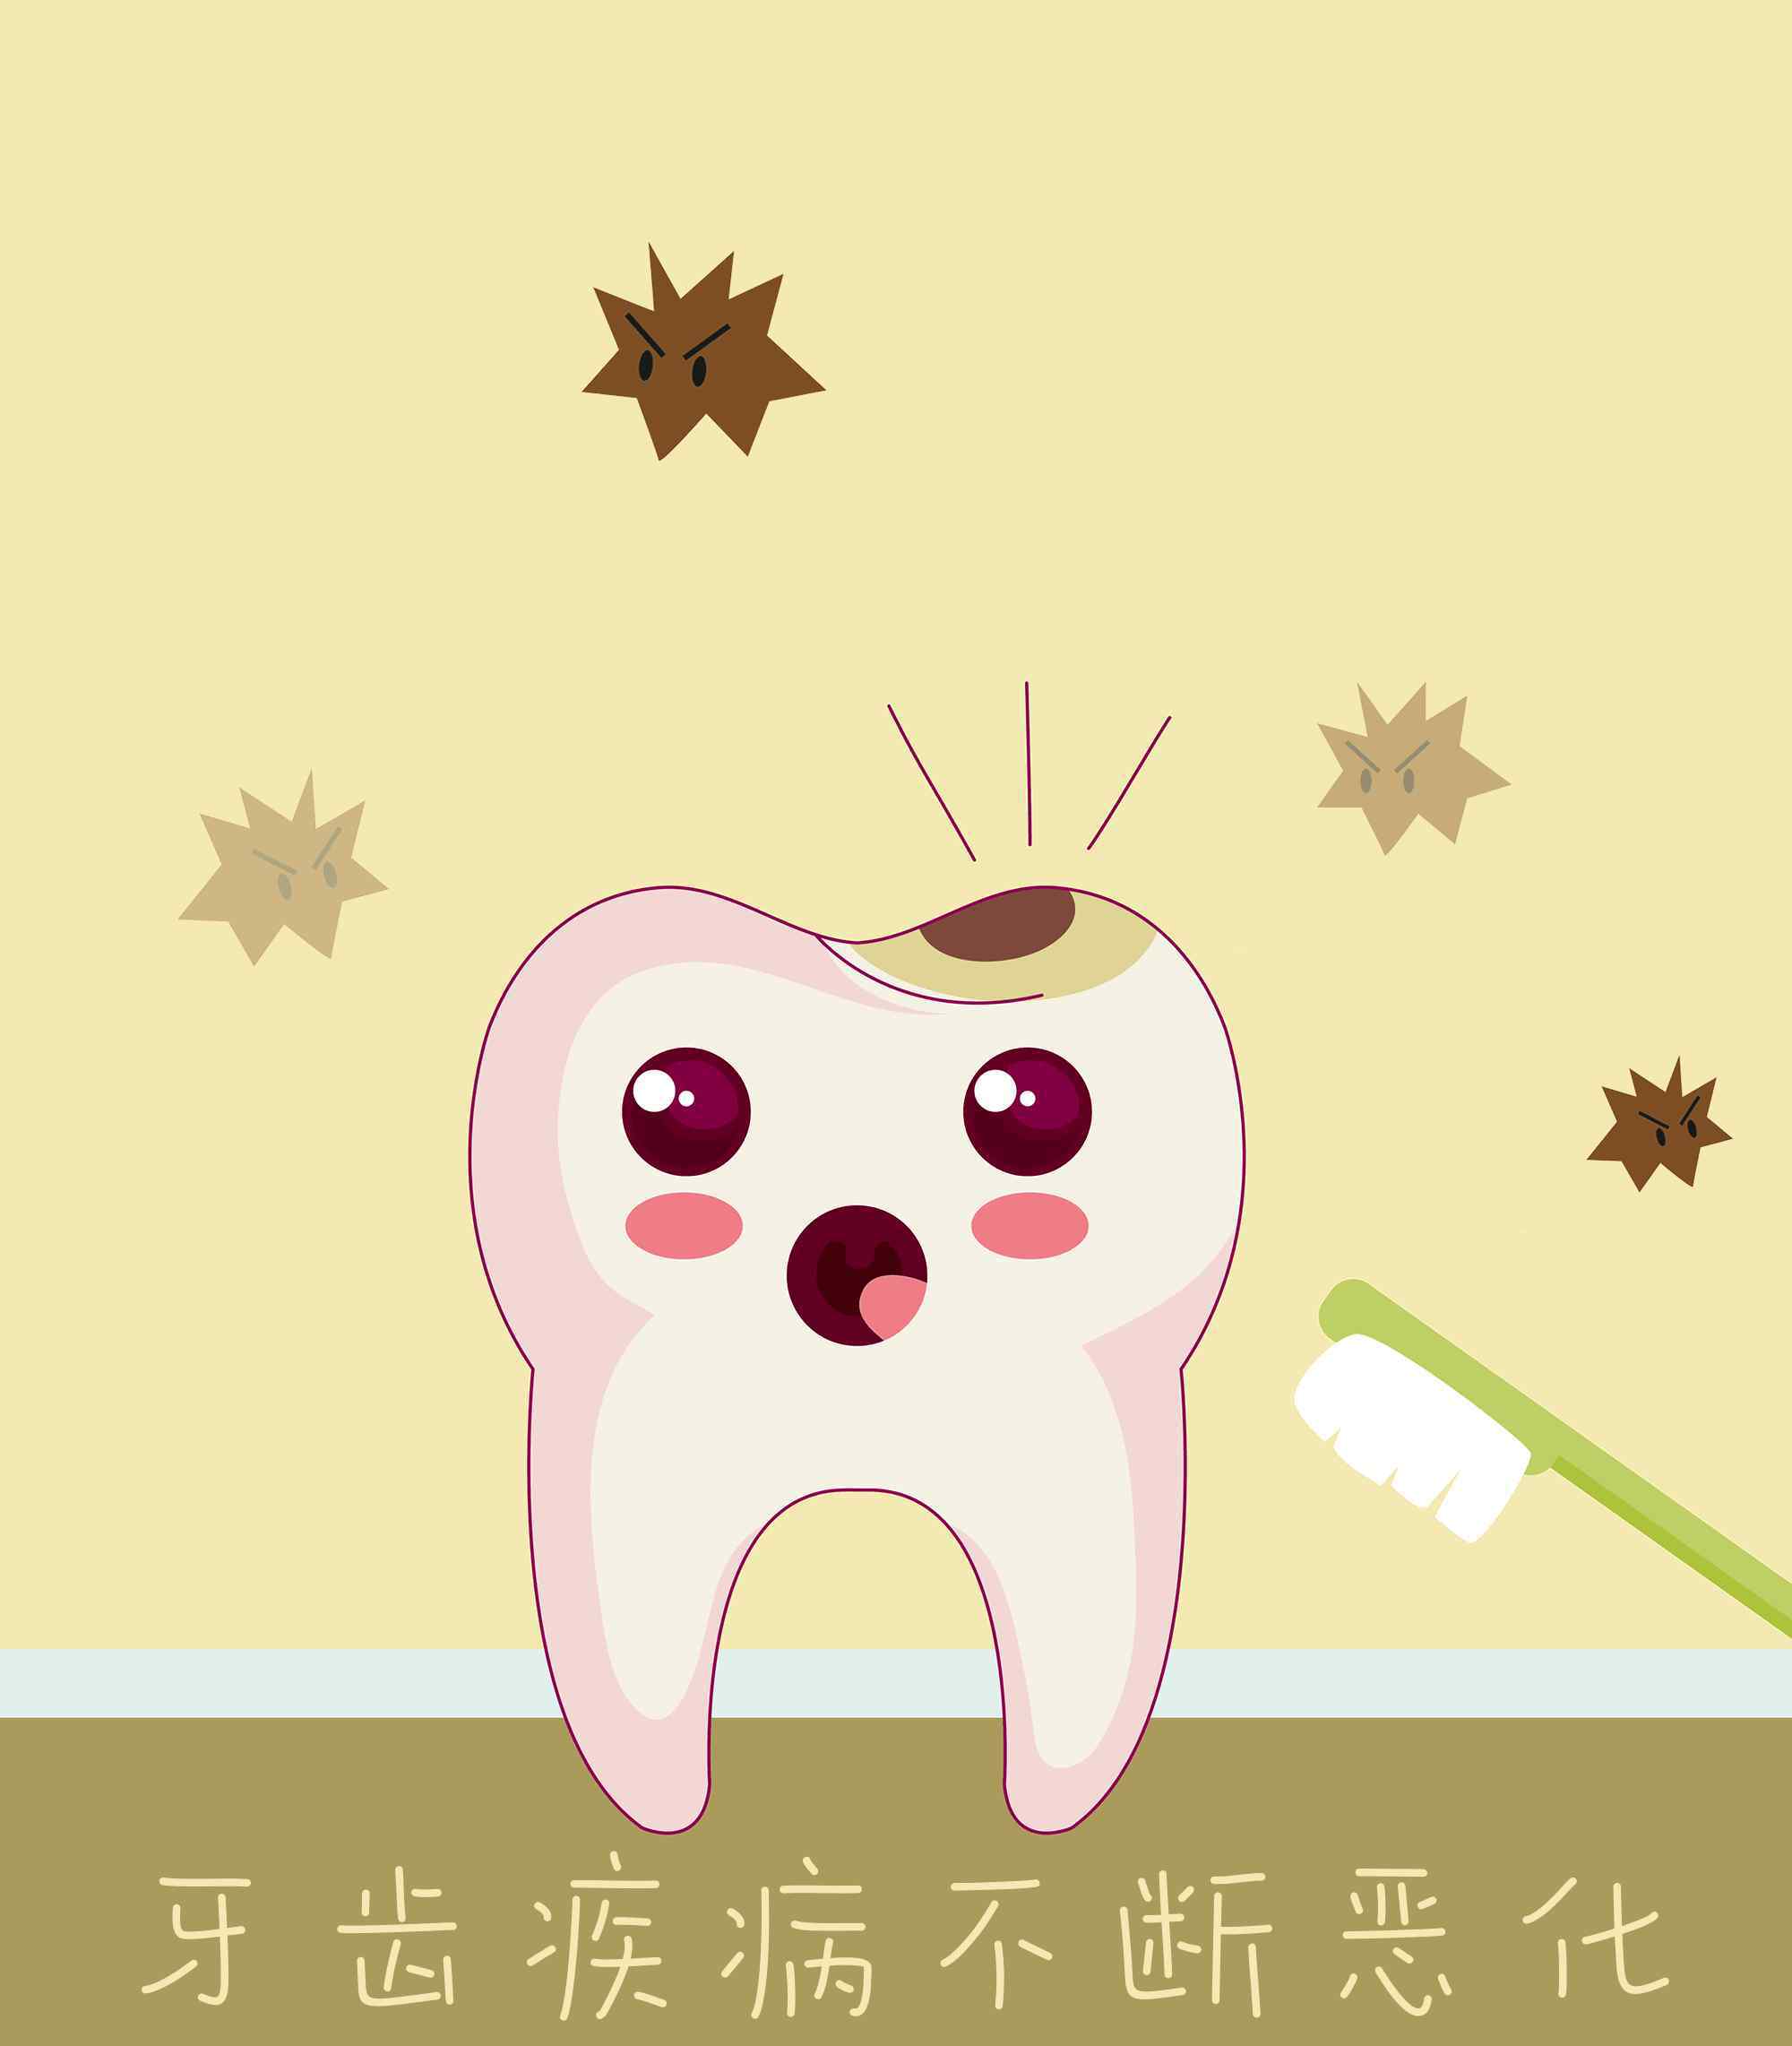 牙菌斑图片 【腐蚀人类牙齿】有些人生来都没见过的牙菌斑图片